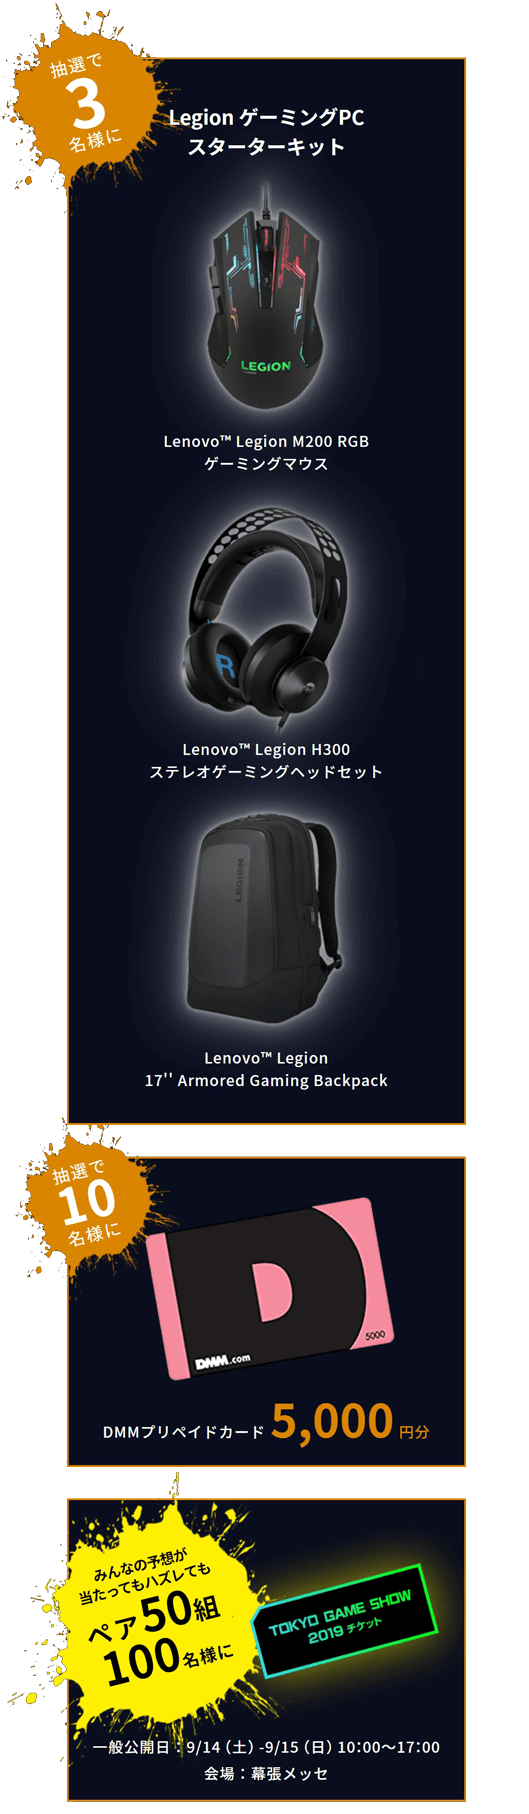 抽選で３名様に 1LegionゲーミングPCスターターキット Lenovo™ Legion M200 RGB
                               ゲーミングマウス Lenovo™ Legion H300
                               ステレオゲーミングヘッドセット Lenovo™ Legion
                               17'' Armored Gaming Backpack
                               抽選で10名様にDMMプリペイドカード5,000円分
                               みんなの予想が当たってもハズレてもペア50組100名様に TOKYO GAME SHOW2019チケット